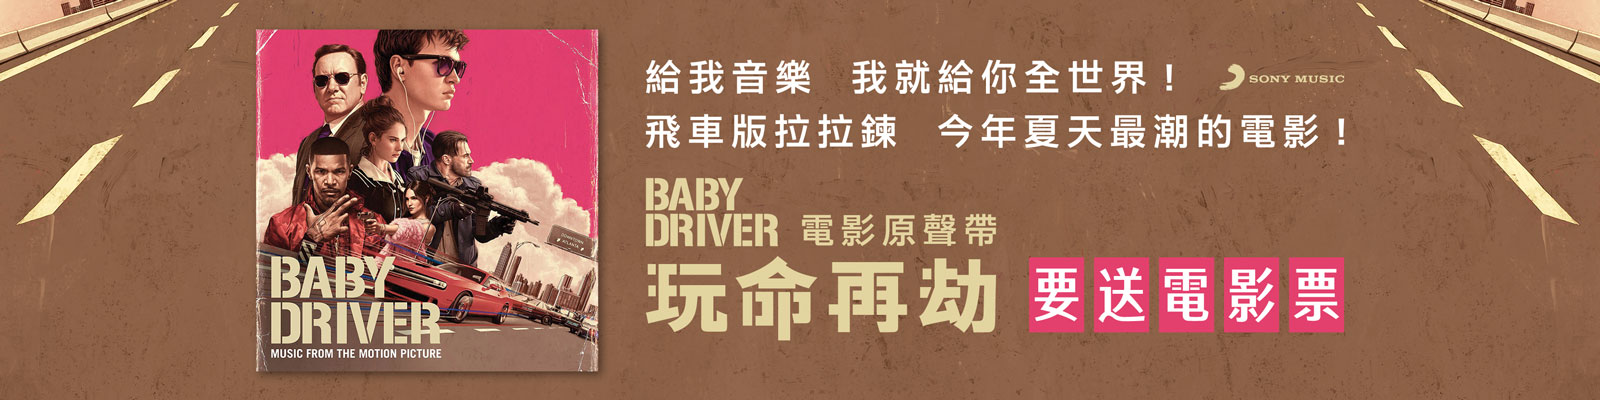 贈票《玩命再劫 電影原聲帶 - Baby Driver OST 》抽獎活動